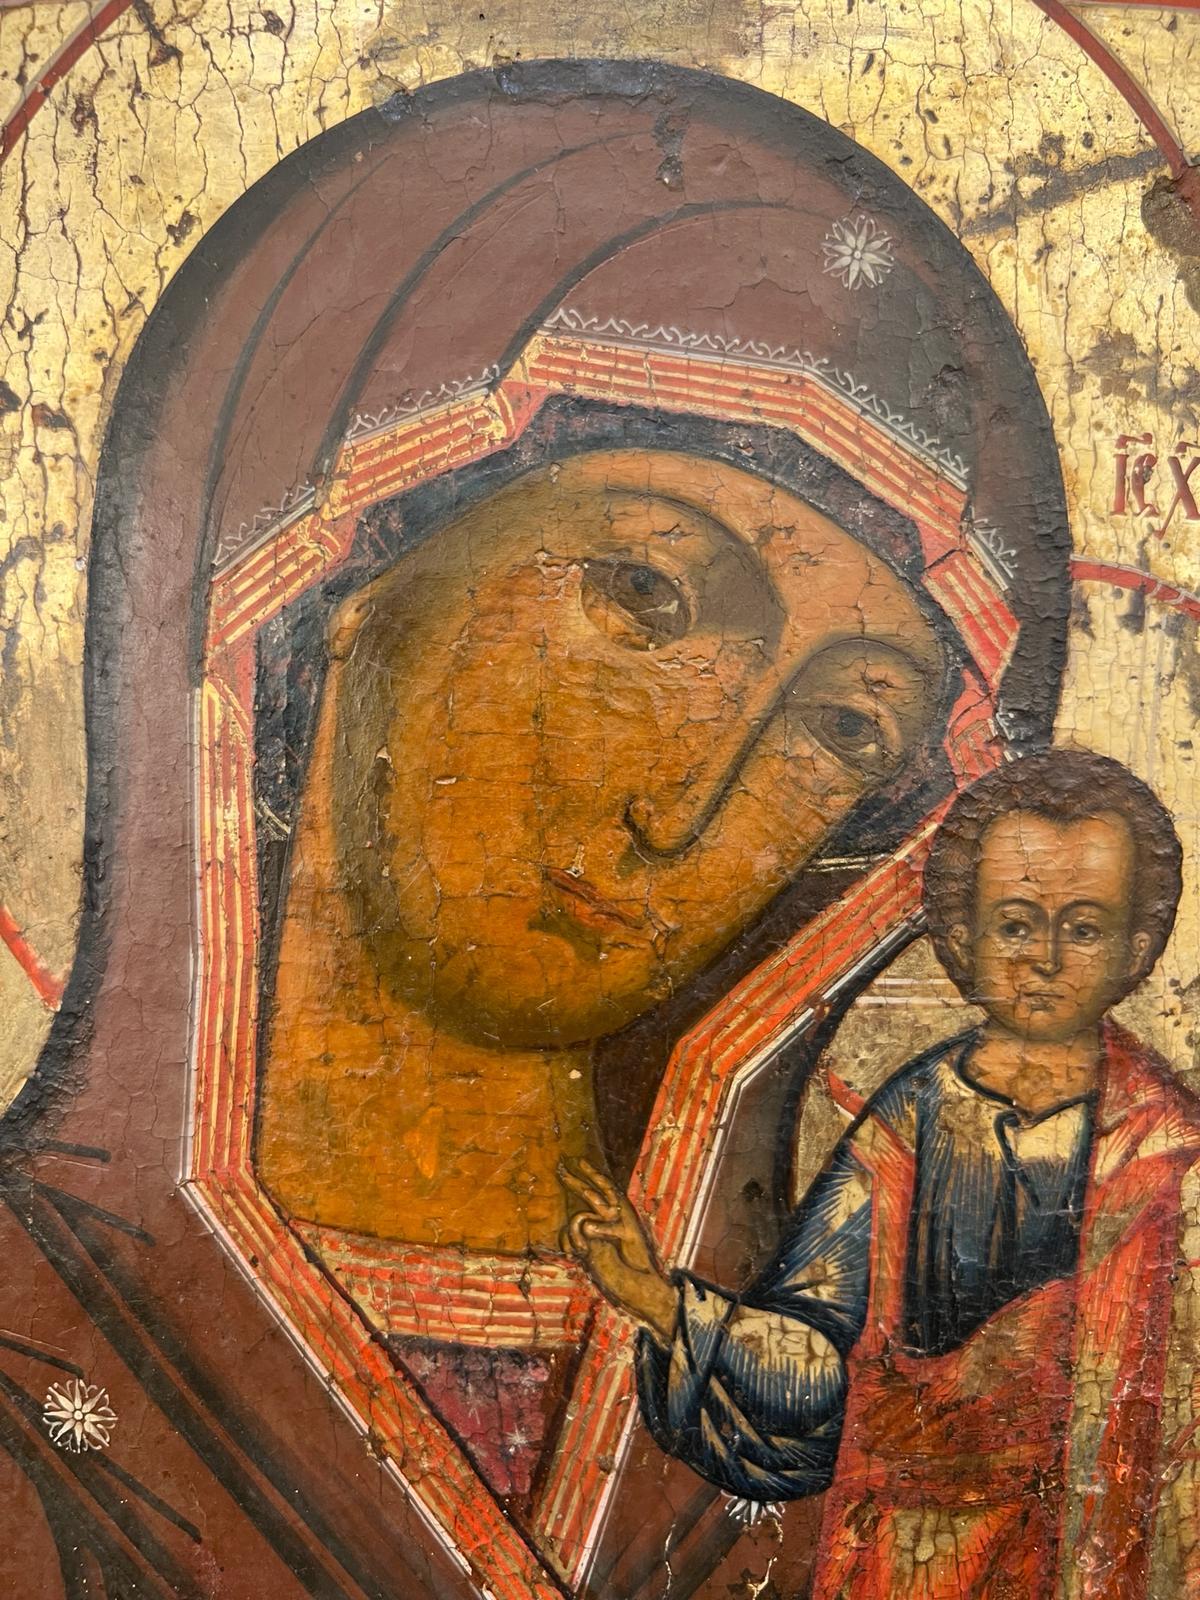 Nous vous présentons une belle icône orthodoxe datant du milieu du XIXe siècle en Russie. Notre-Dame de Kazan, également connue sous le nom de Mère de Dieu de Kazan et de Sainte Protectrice de la Russie, est une icône sacrée de la plus haute stature